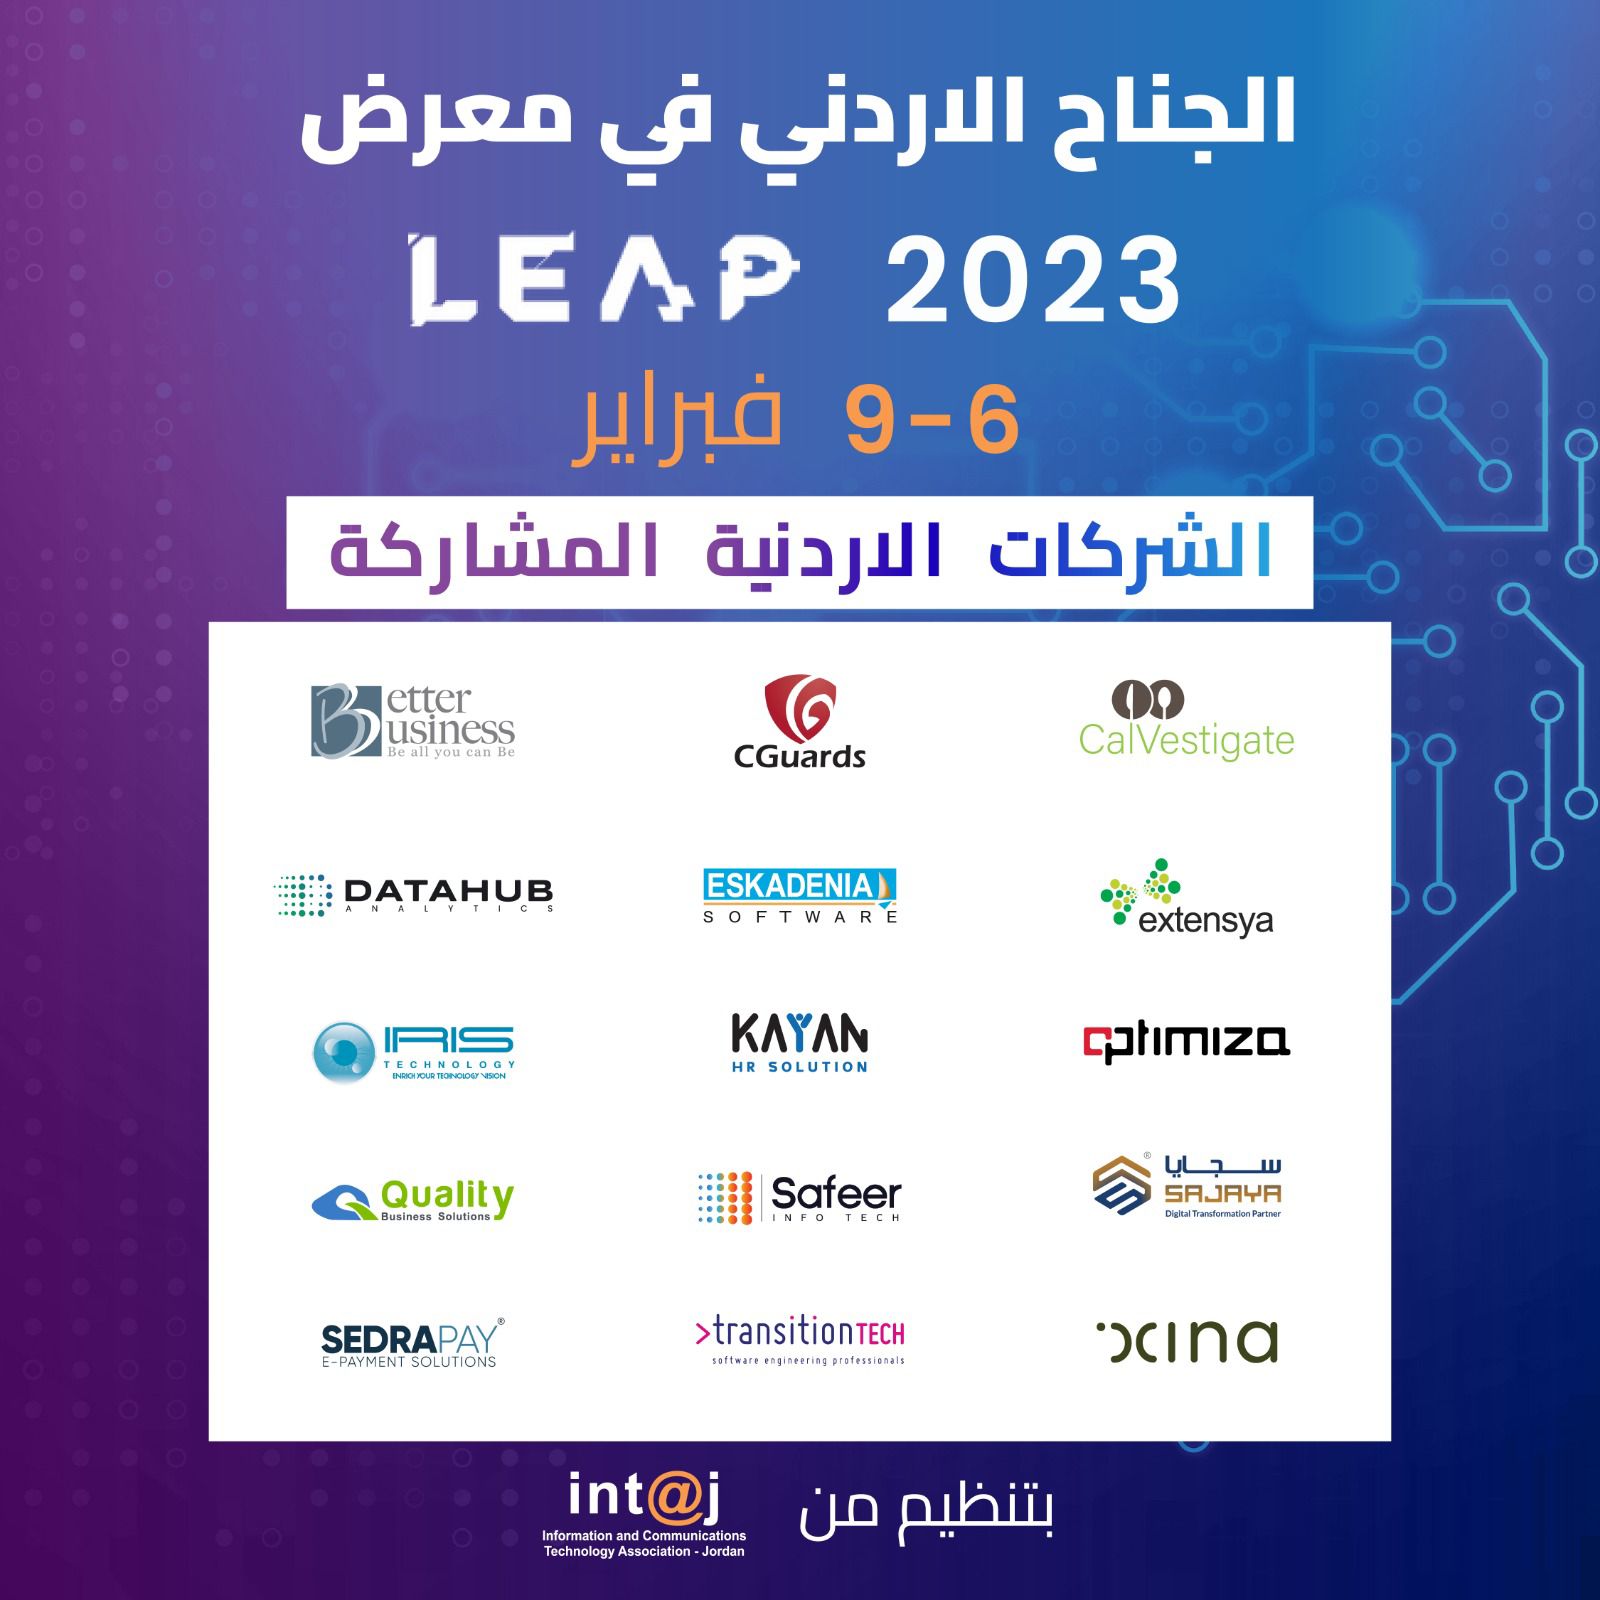 بمشاركة 15 شركة أردنيّة 《إنتاج》تقيم للعام الثاني جناحاً أردنيّاً في مؤتمر ومعرض «LEAP» التقنيّ بالرياض